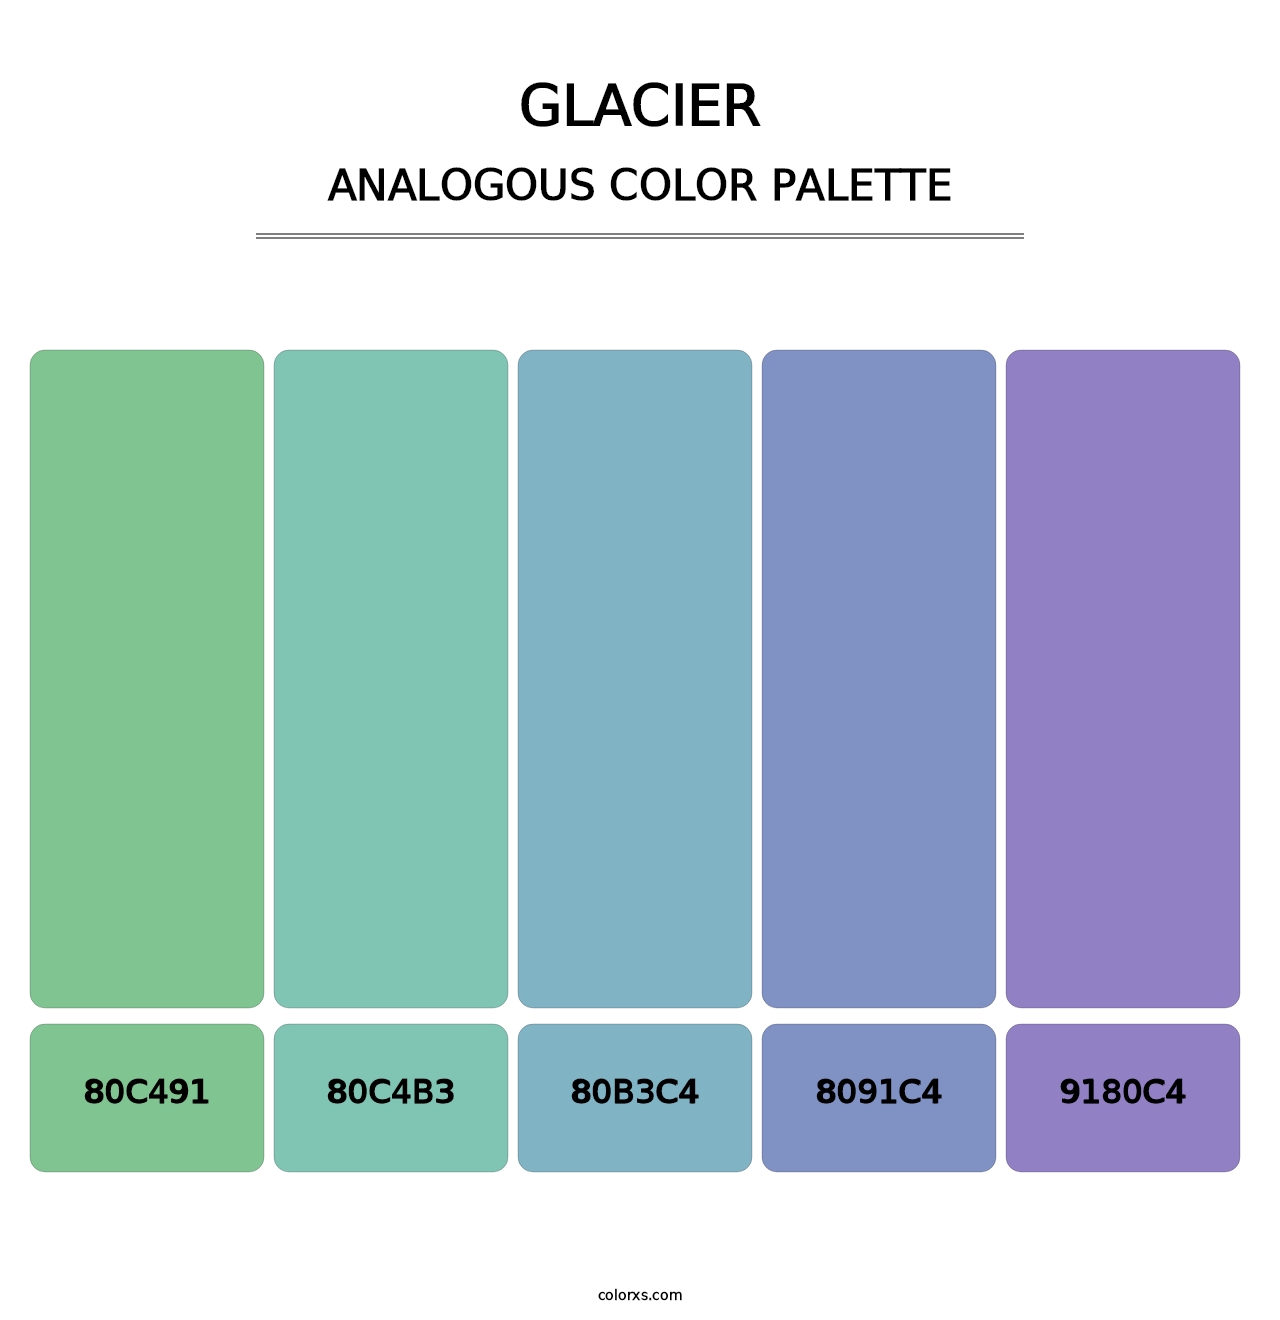 Glacier - Analogous Color Palette